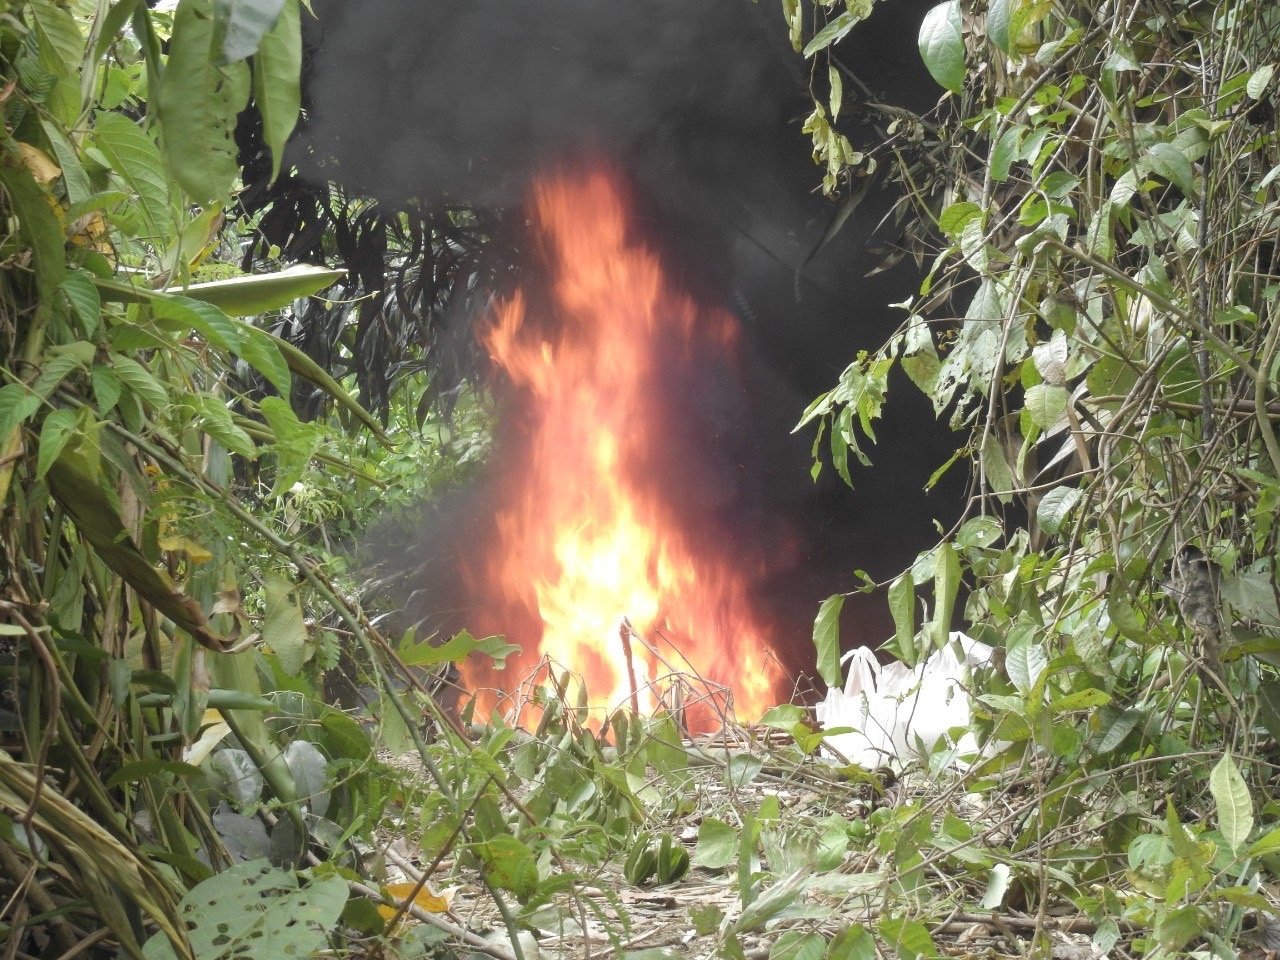 เศร้า! ช้างป่า “สีดอถั่วต้ม” ล้มแล้ว หลังถูกยิงพรุนทั่วร่างกาย